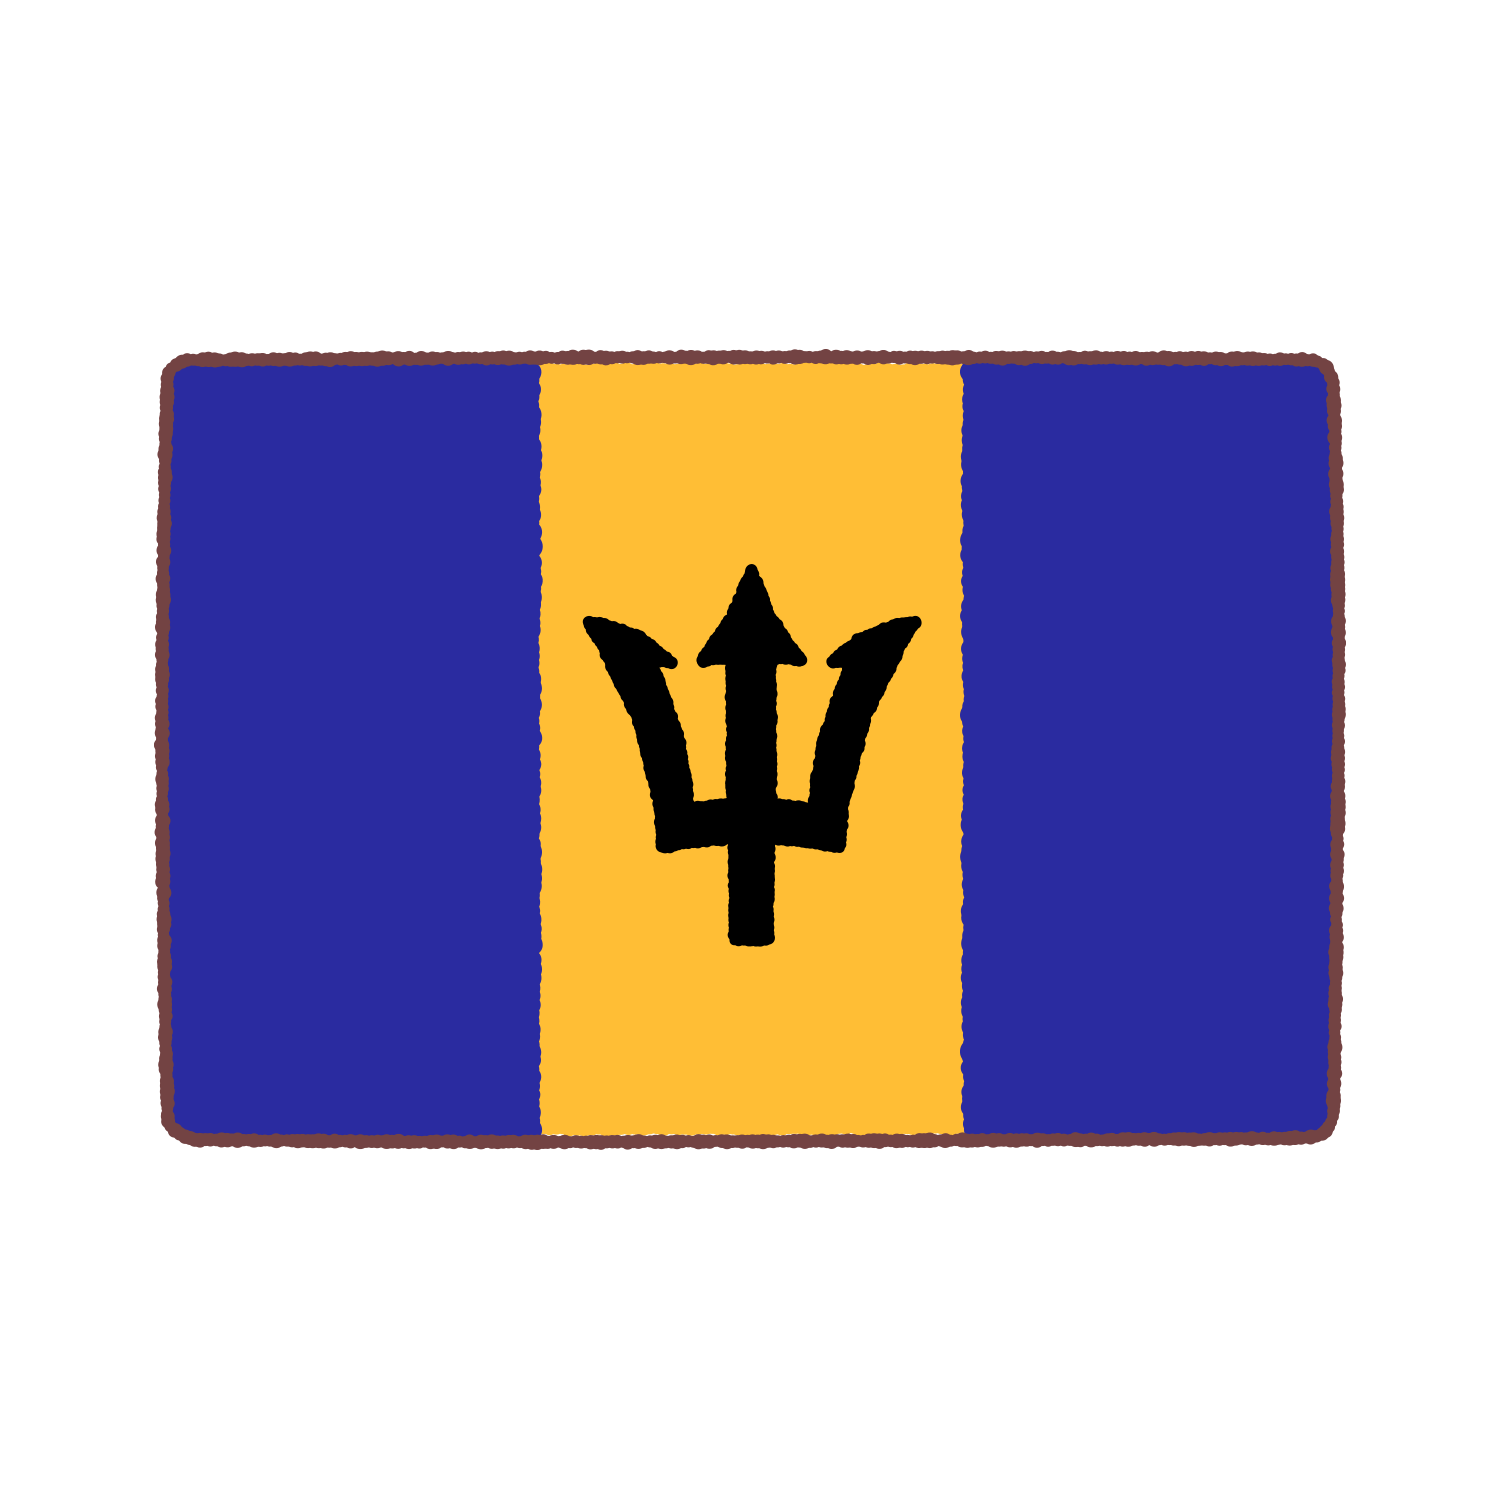 バルバドス国旗のイラスト